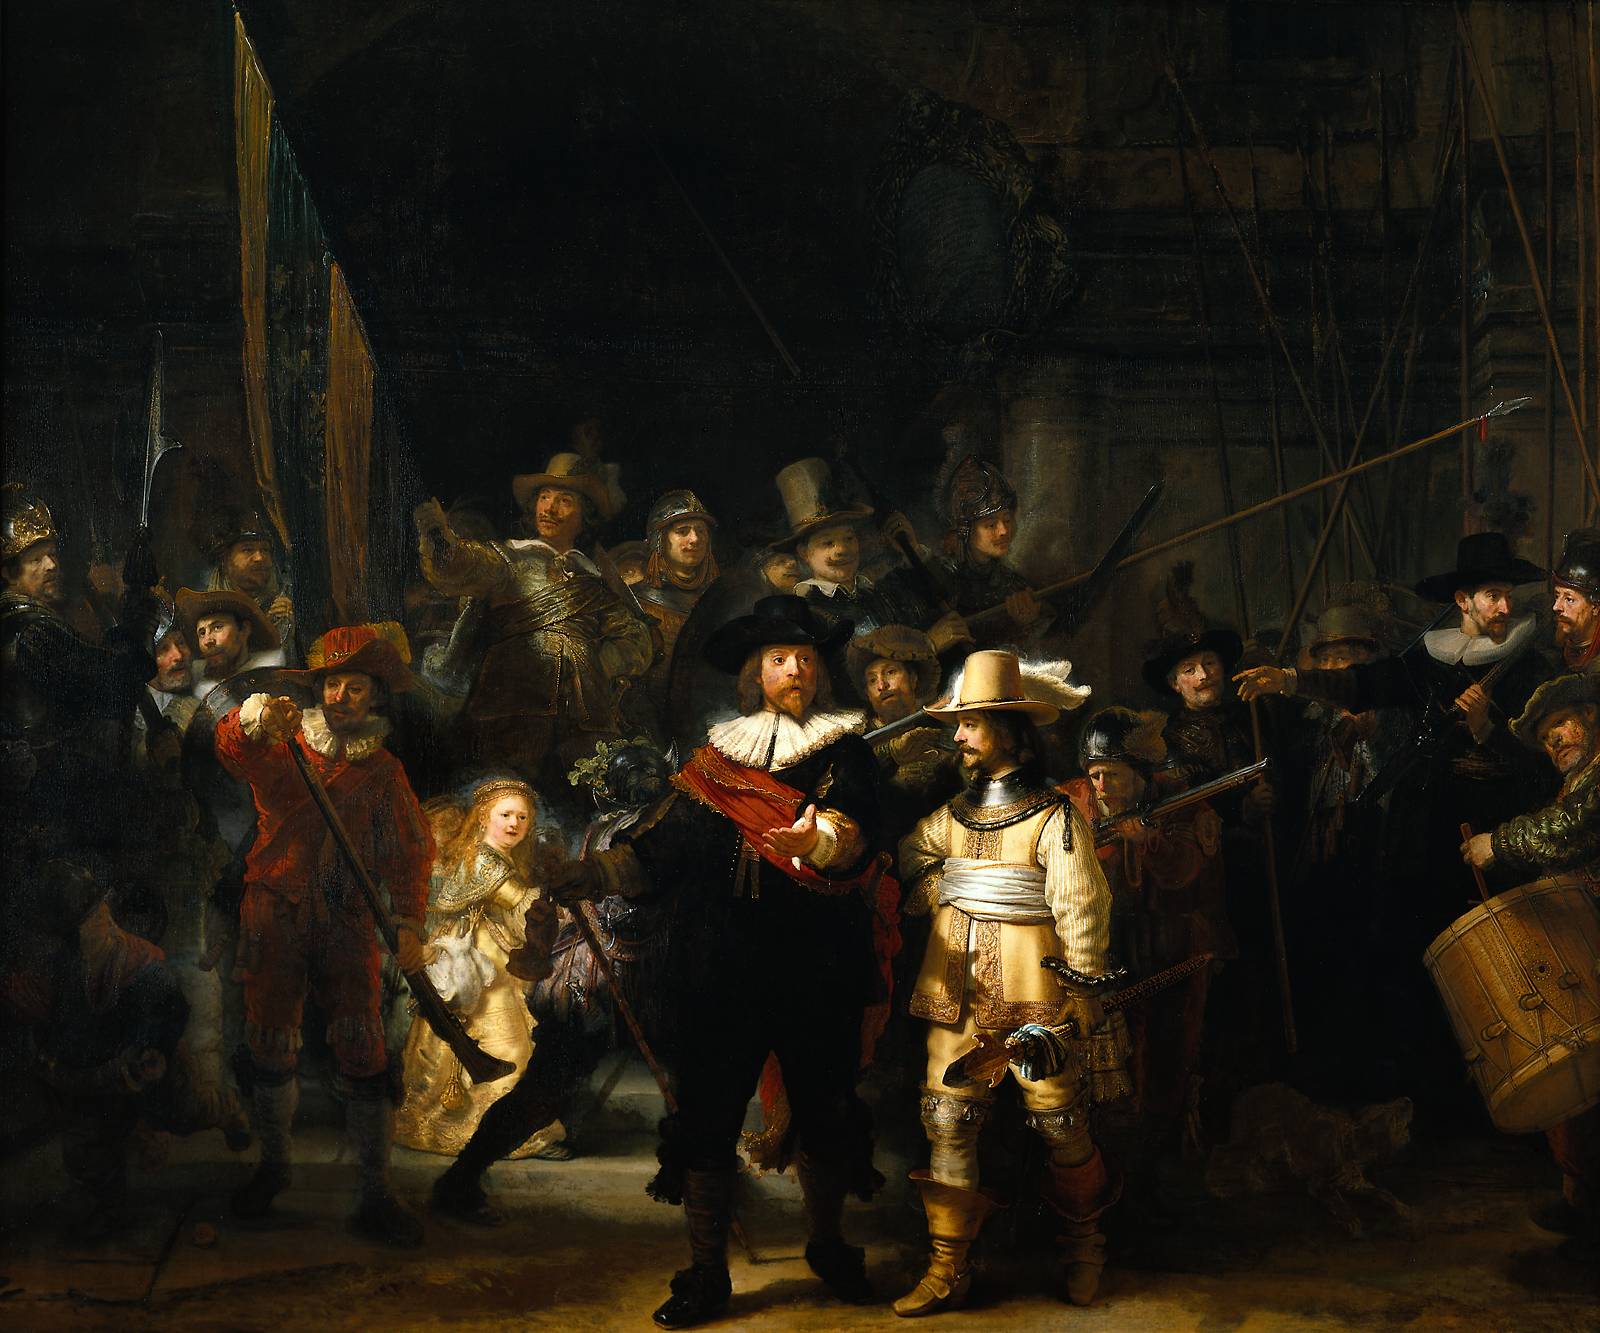 La ronda de noche - Rembrandt